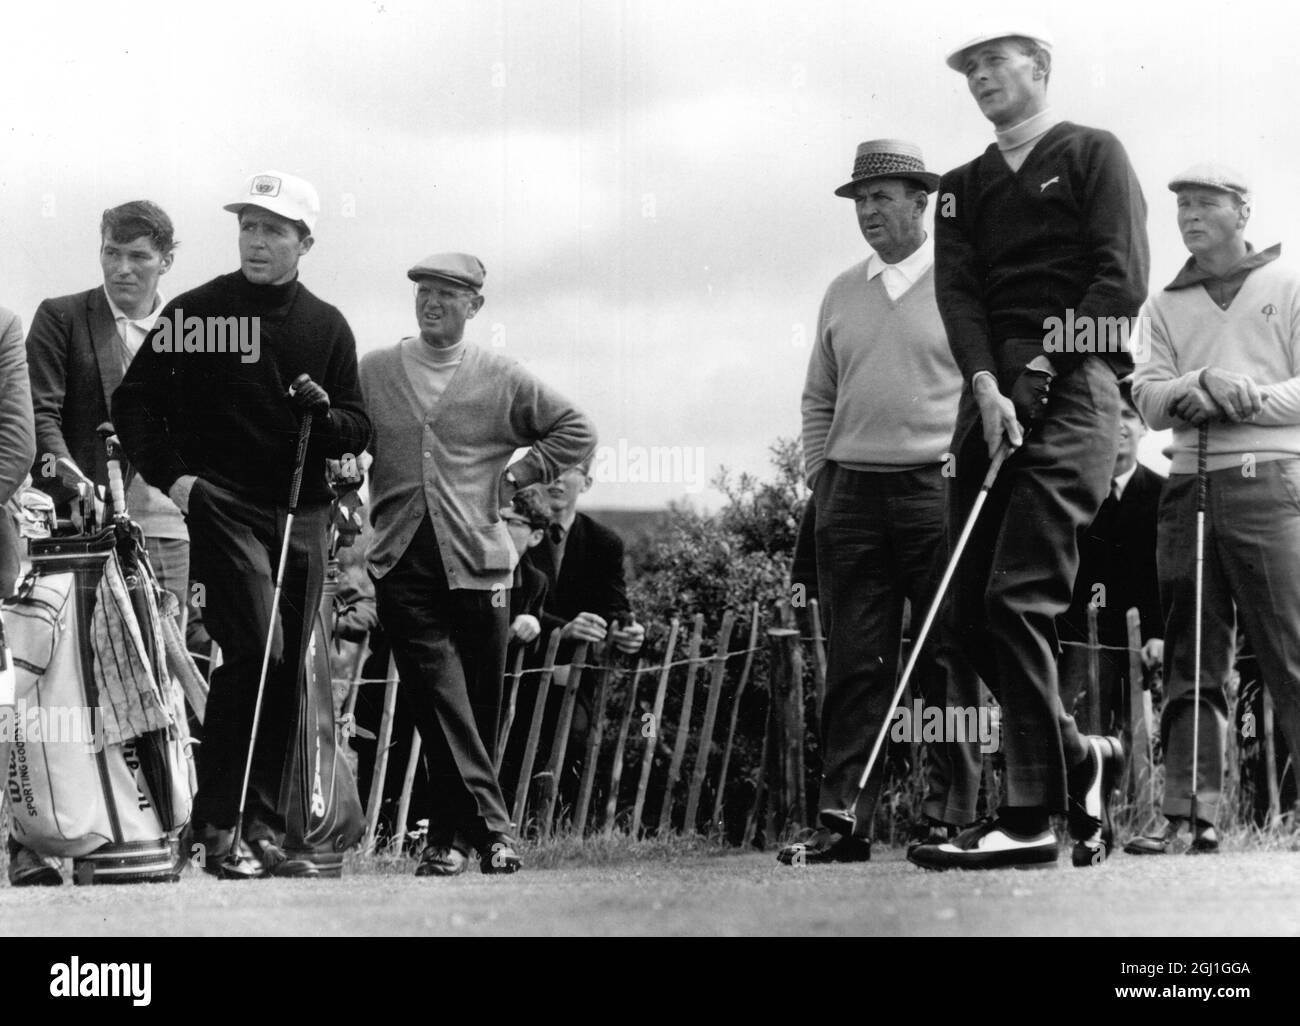 (A destra) Bruce Devlin golfer australiano e Gary Player golfista sudafricano (testa bianca sinistra) Sam Snead golfista americano (a sinistra di Devlin ) e Arnold Palmer golfista americano (estrema destra) durante la pratica al Royal Birkdale Golf Course 6 luglio 1965 Foto Stock